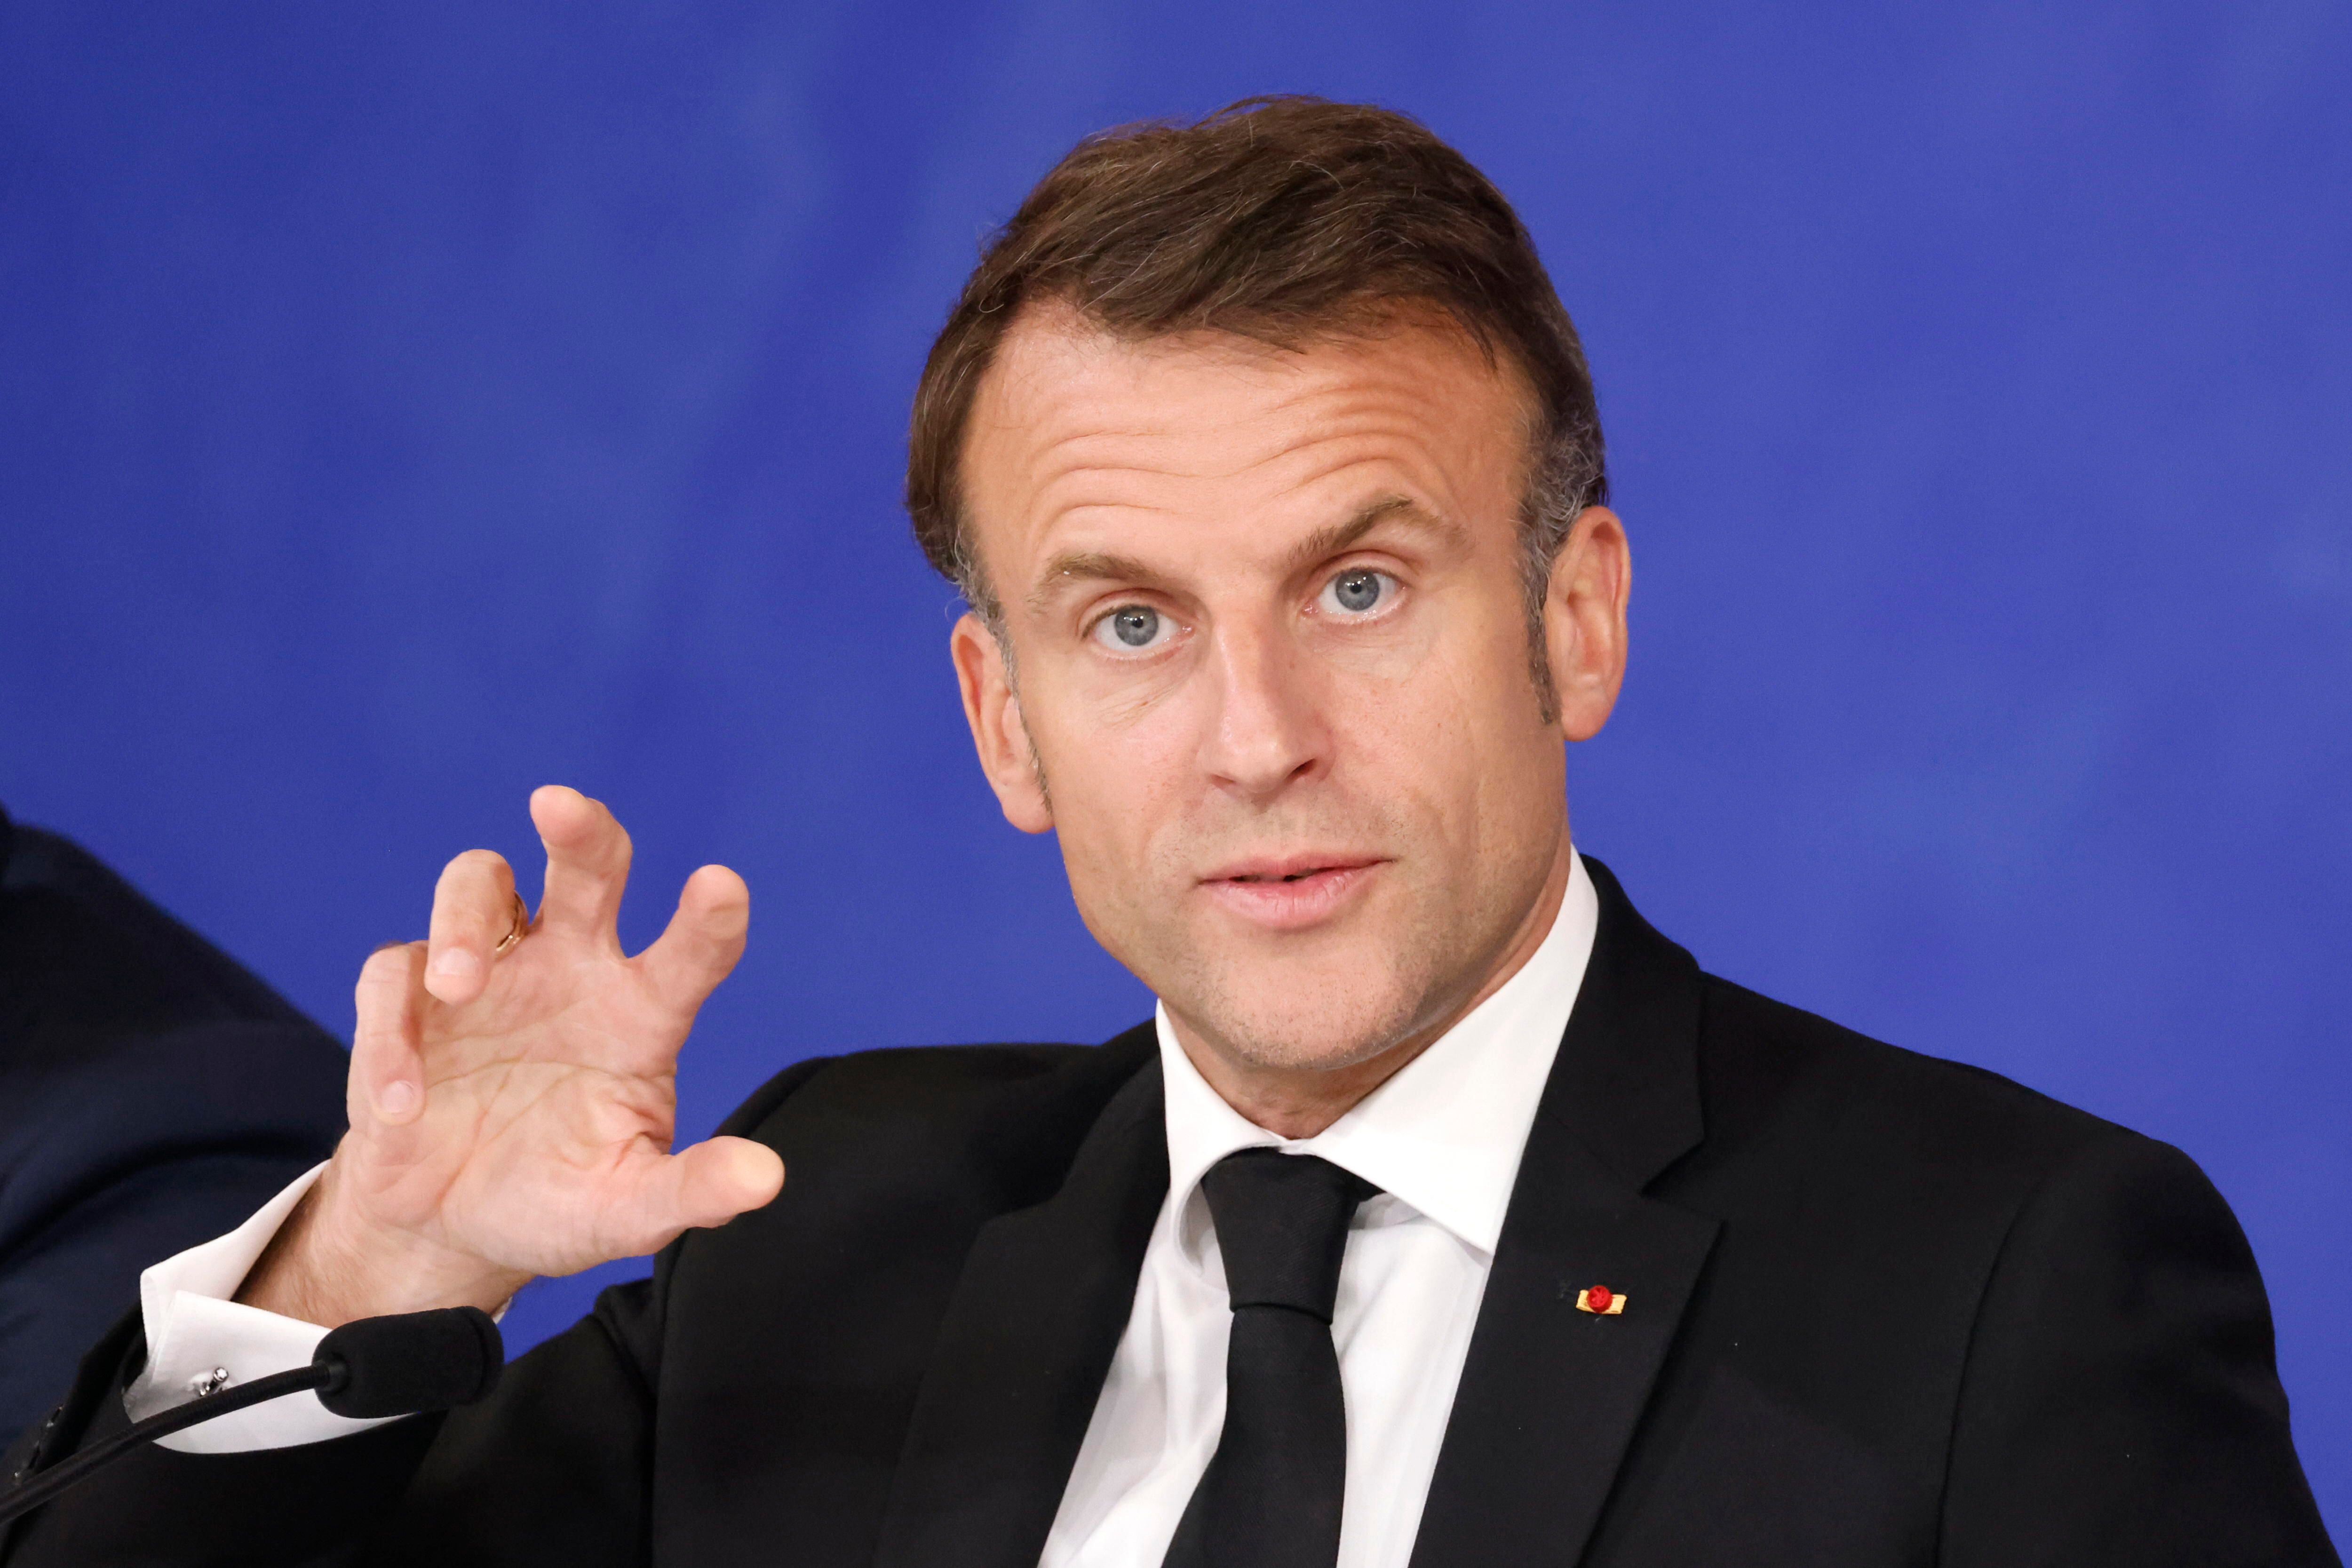 Emmanuel Macron condenó los bloqueos estudiantiles en las universidades de Francia por la guerra en Gaza: “Están politizados”